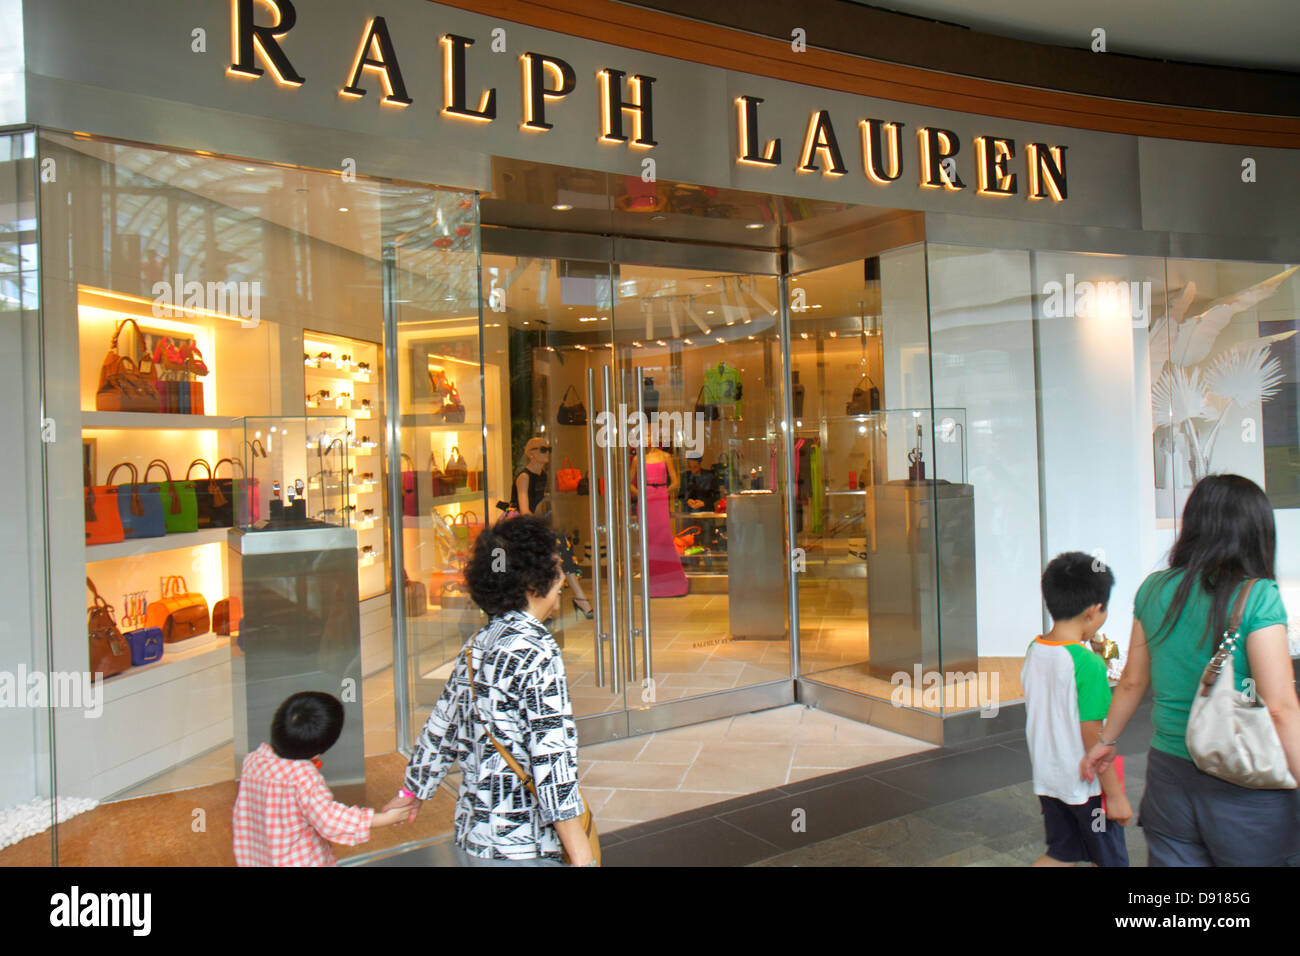 shops that sell ralph lauren